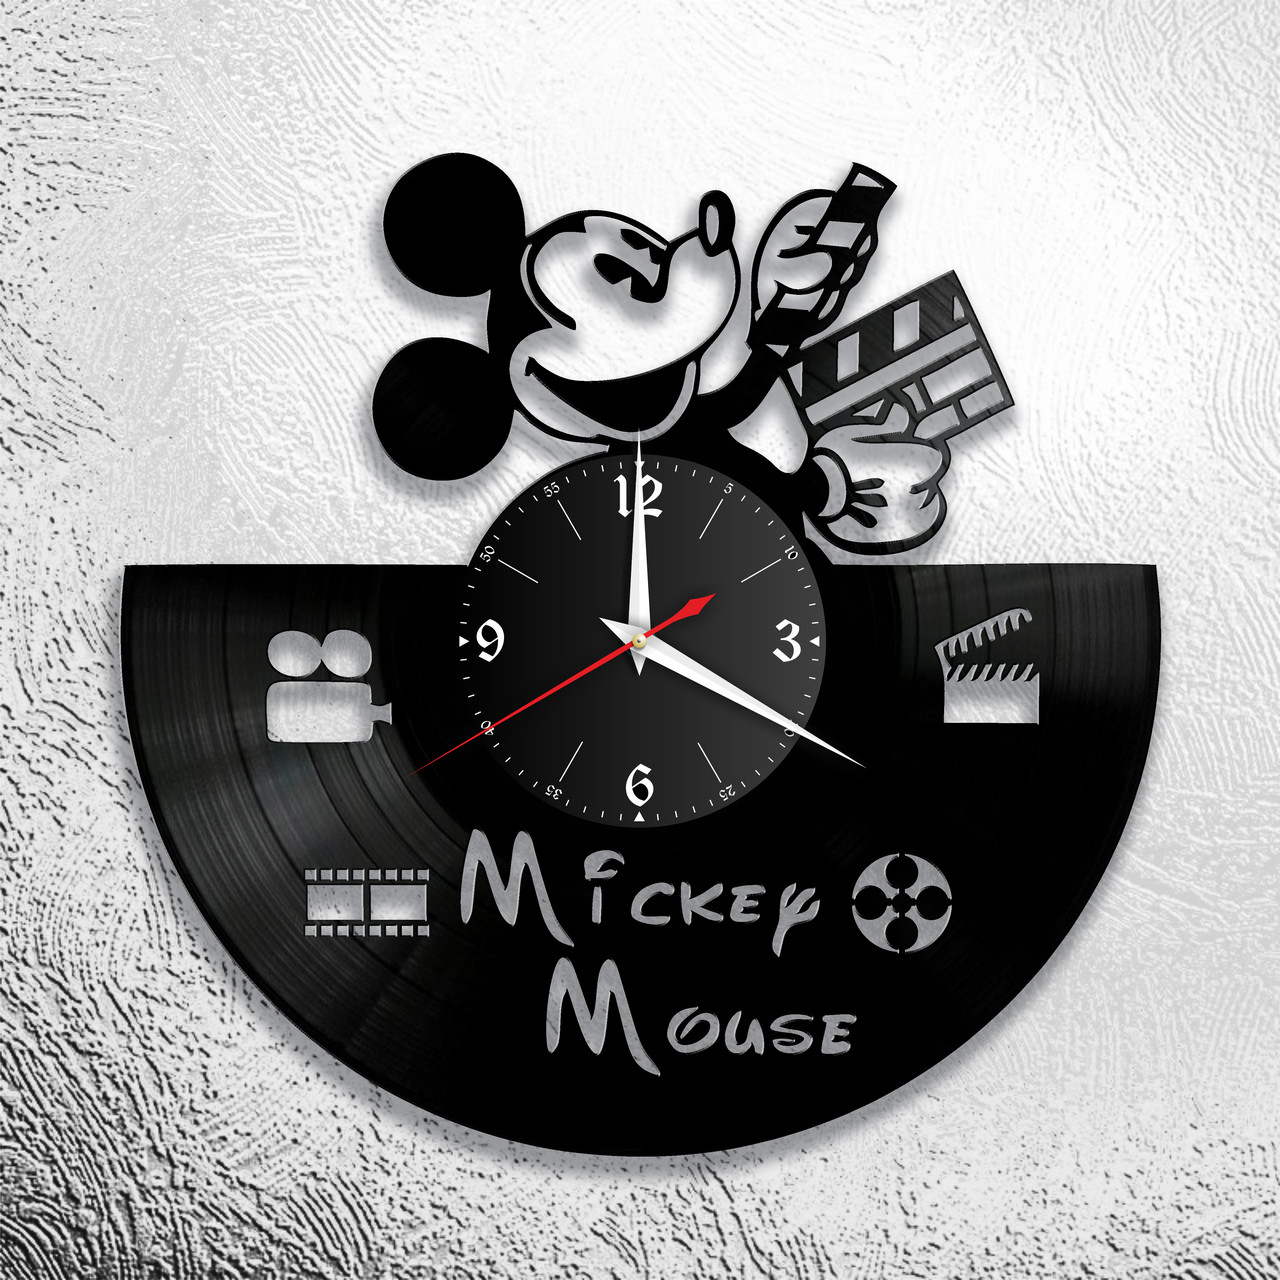 Оригинальные часы из виниловых пластинок "Микки Маус" версия 1, фото 1